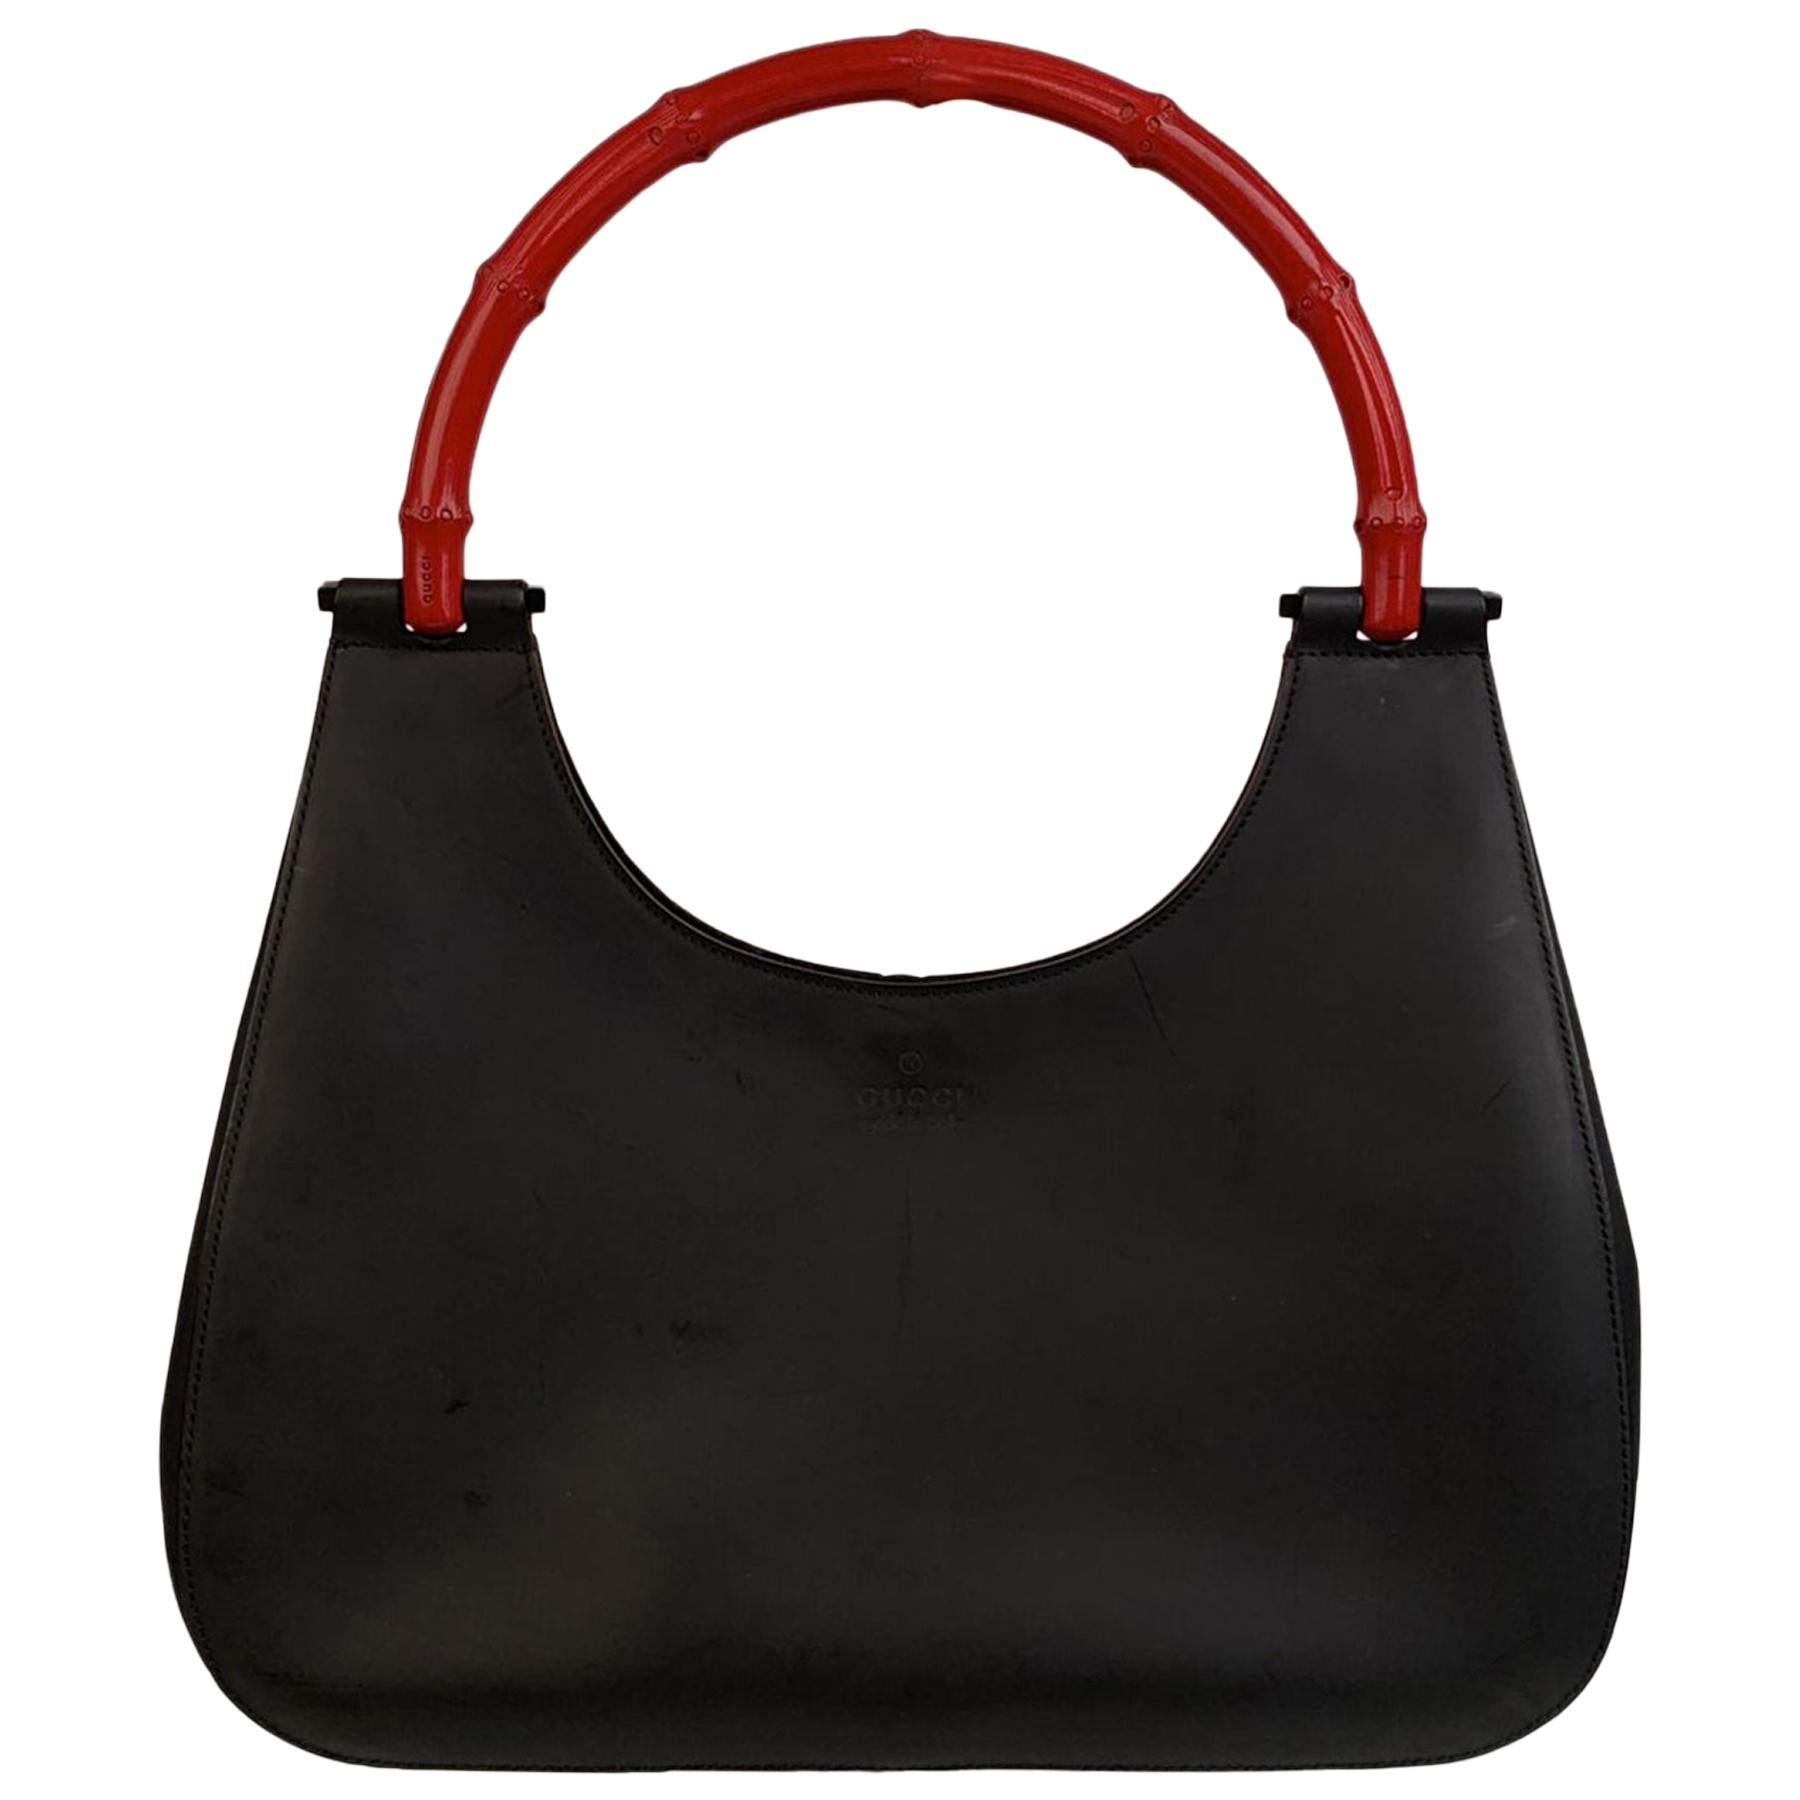 Gucci Black Leather Hobo Bag with Bamboo Handle Handbag